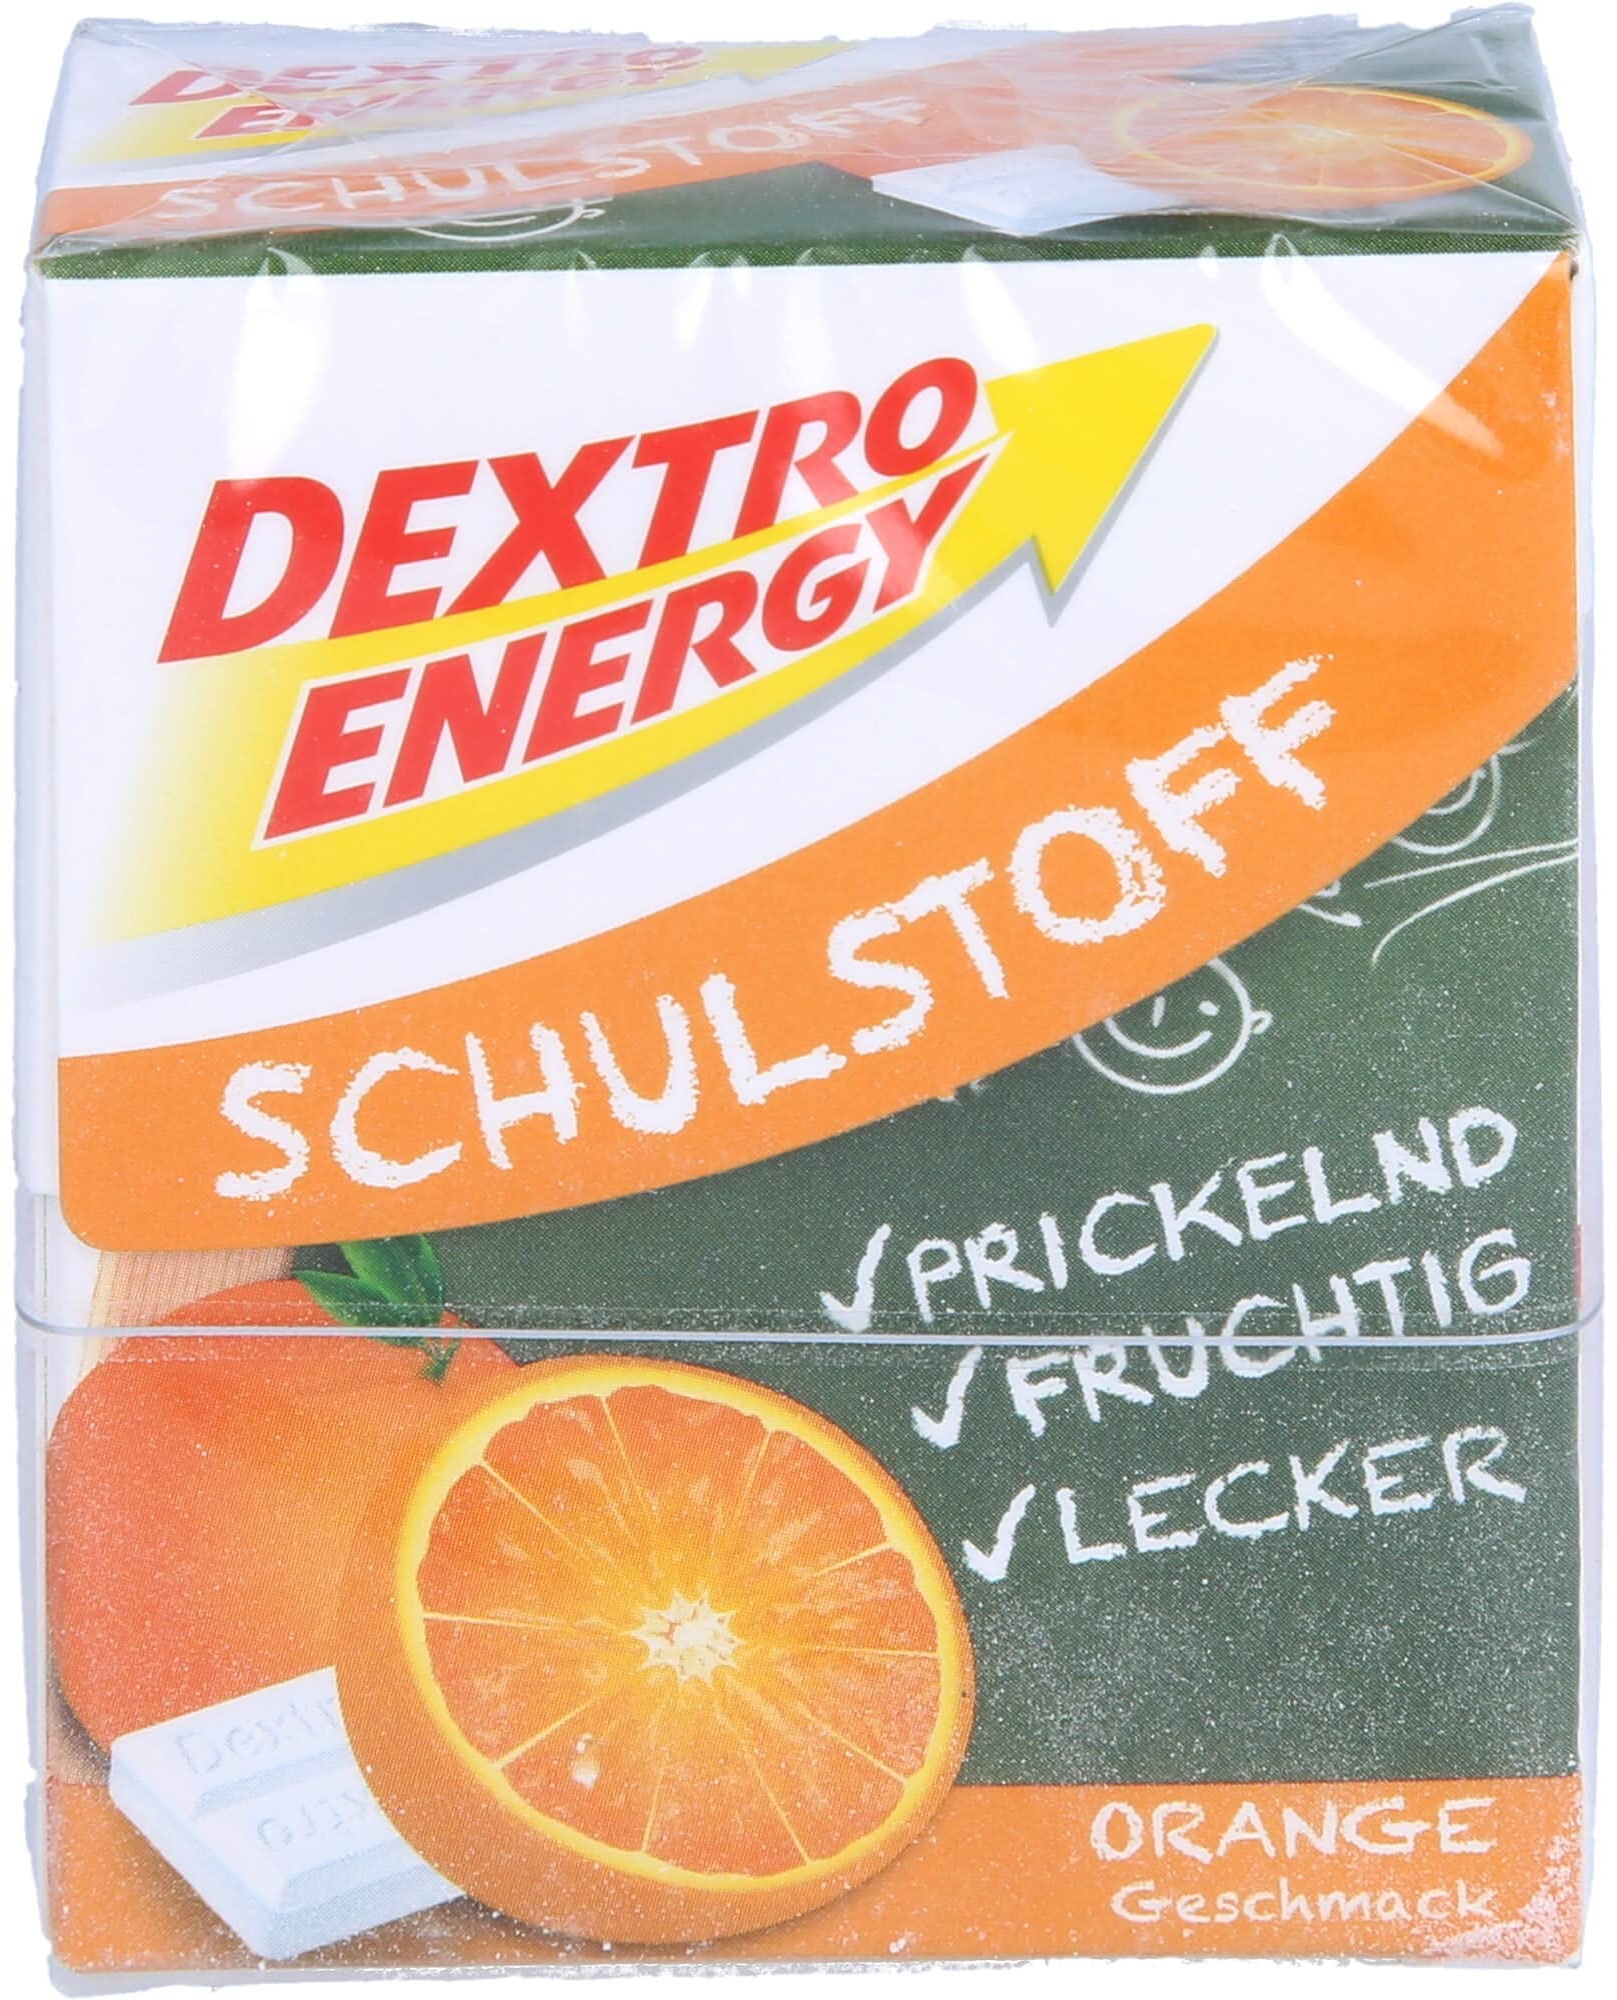 DEXTRO ENERGY Schulstoff Orange Täfelchen 50 g